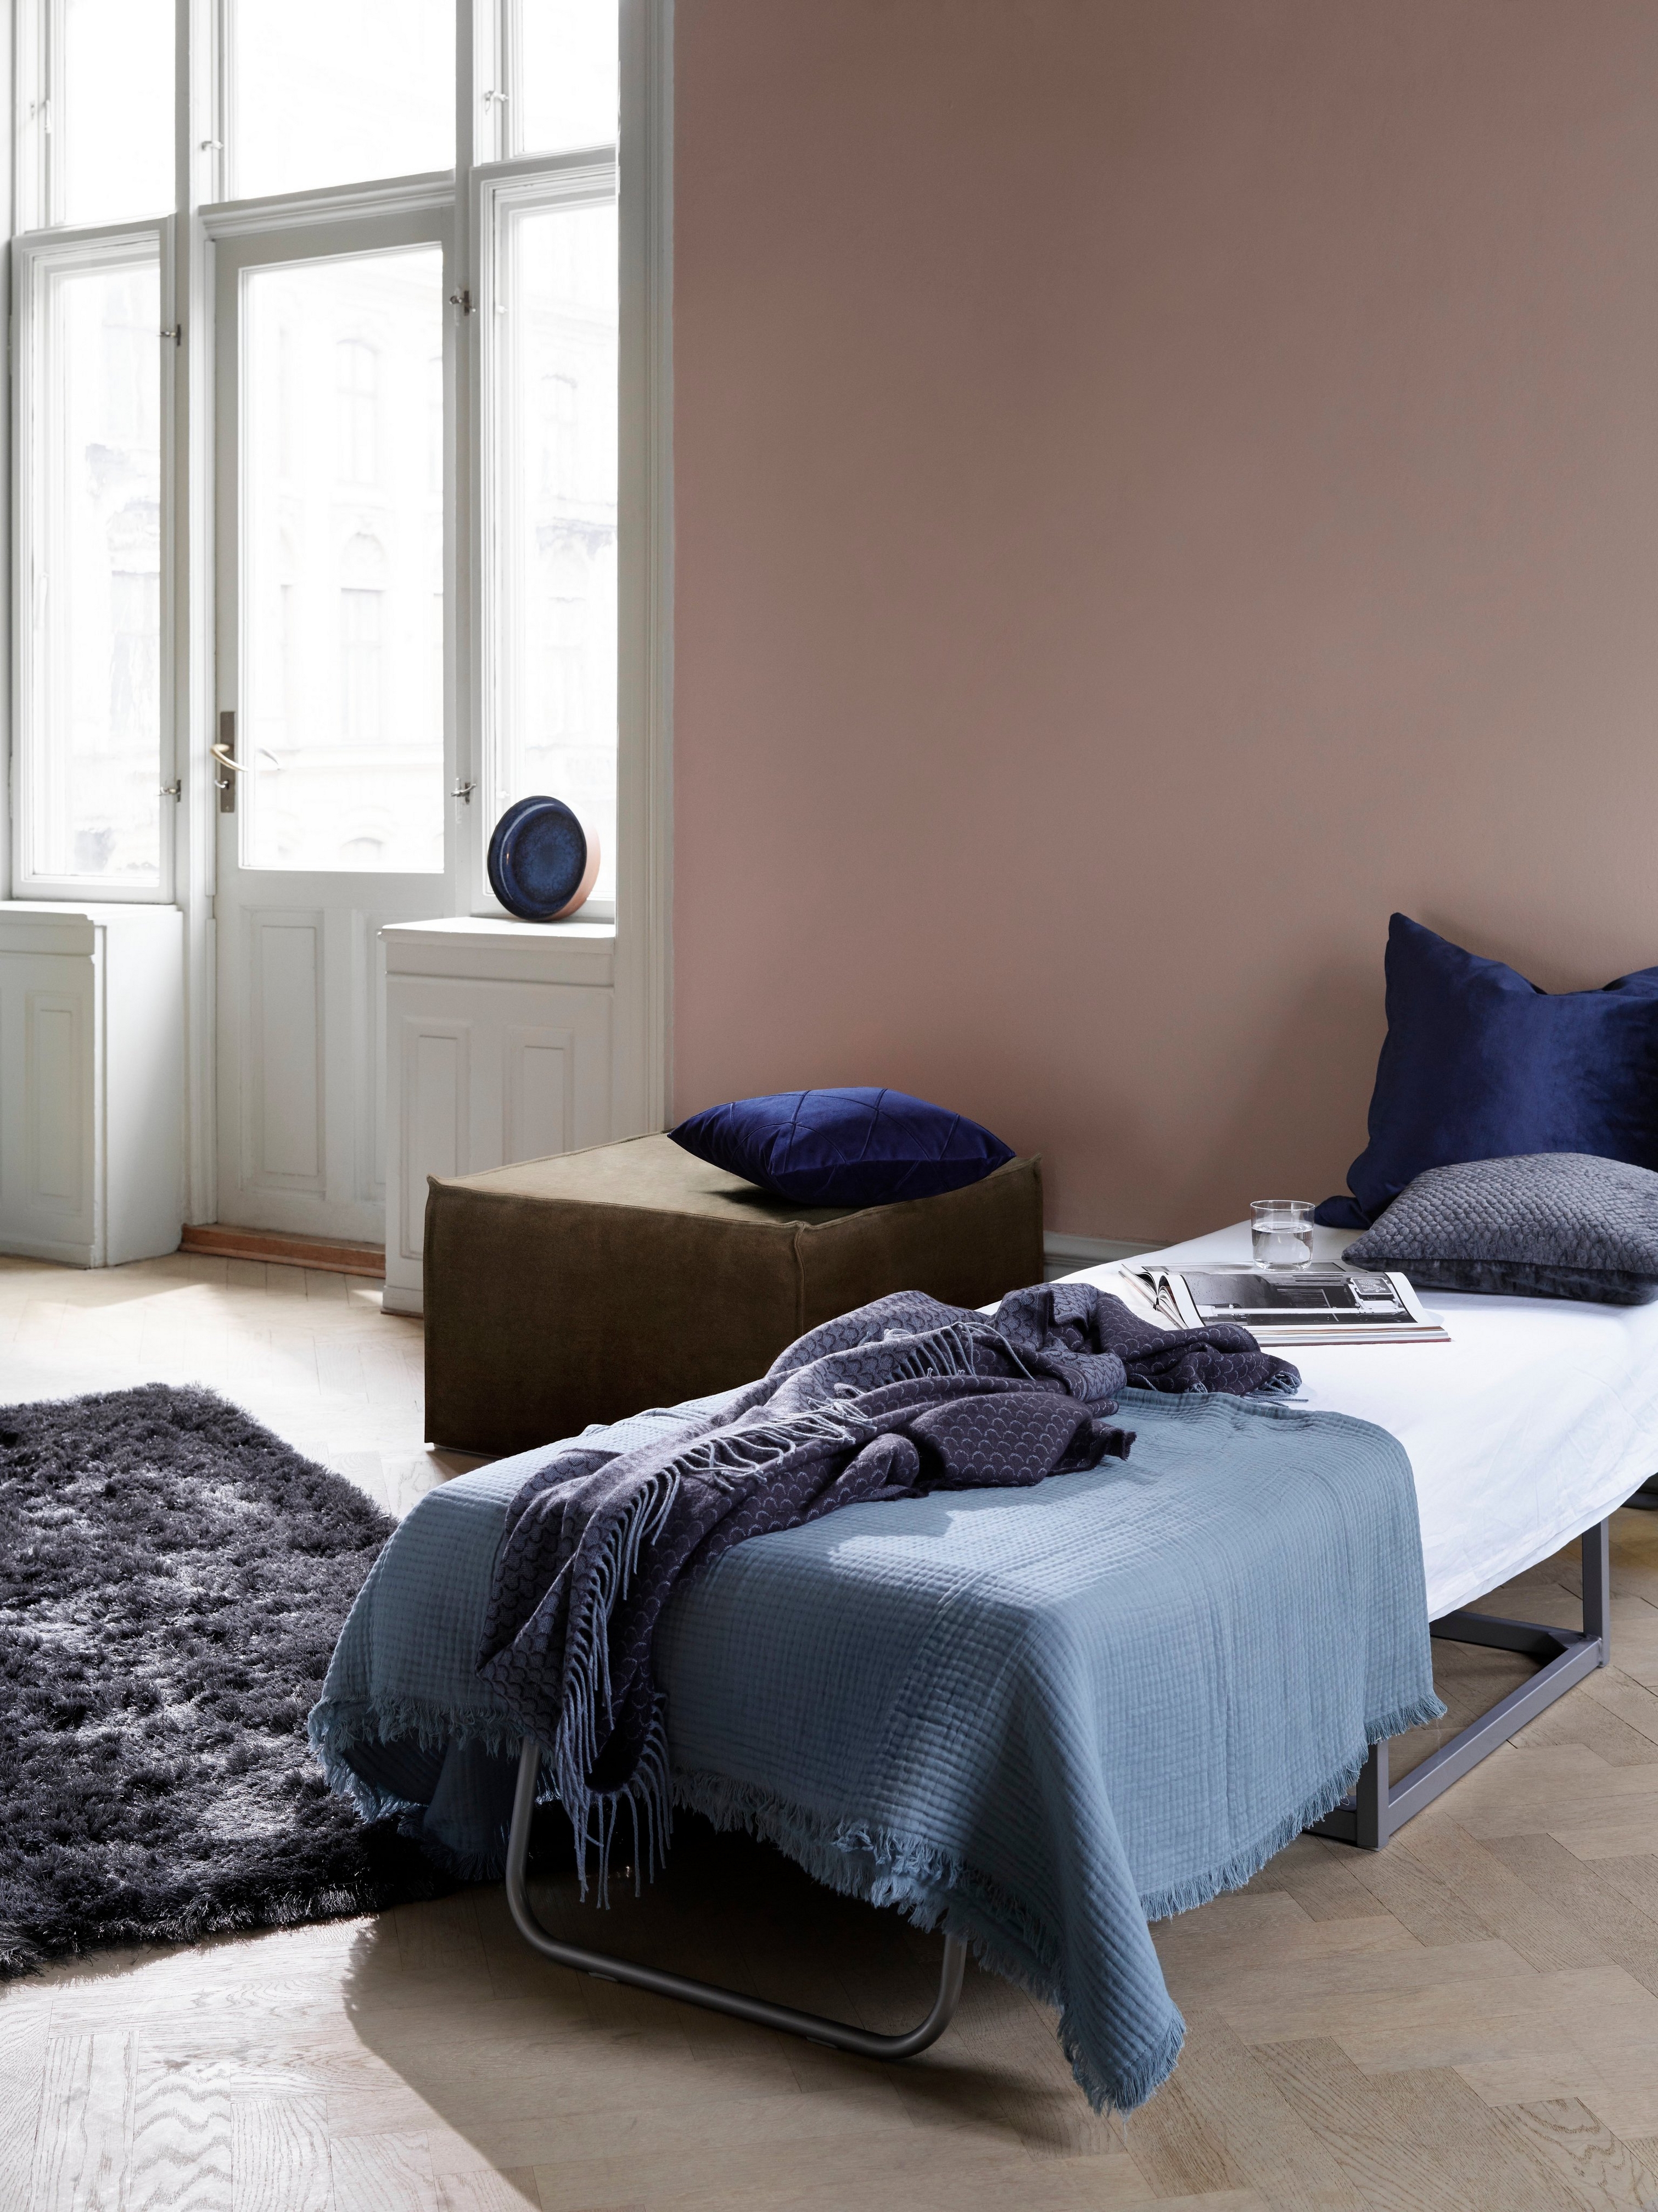 Indbydende værelse med gæsteseng, blåt sengetøj og mørkt, blødt tæppe tæt på oplyste vinduer og Xtra fodskammel.